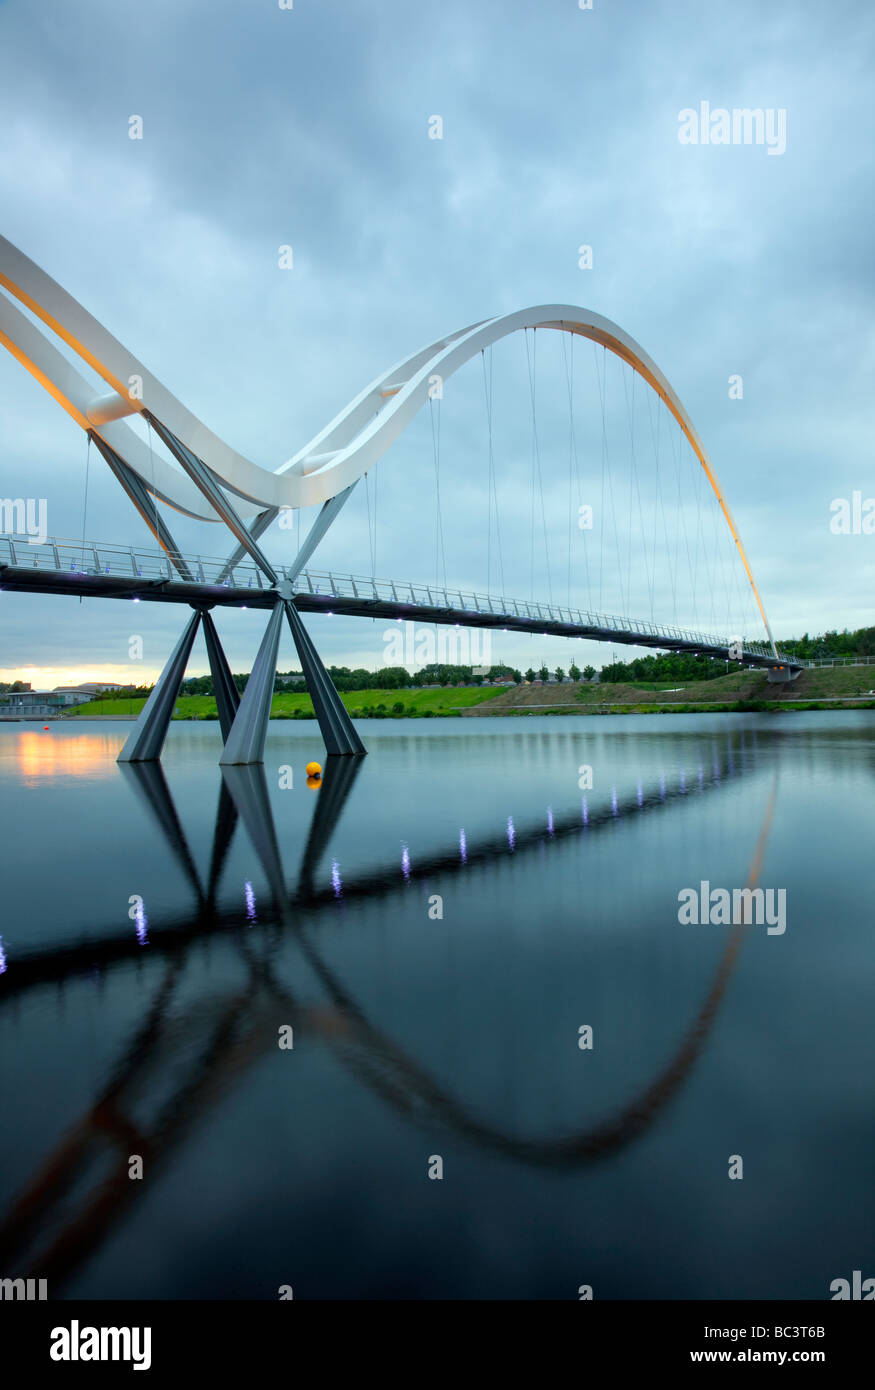 Fußgänger- und Fahrradbrücke. Fußbrücke mit mathematischen asymmetrischen Bögen in Thornaby-on-Tees, Middlesborough, Teesside. Stockfoto